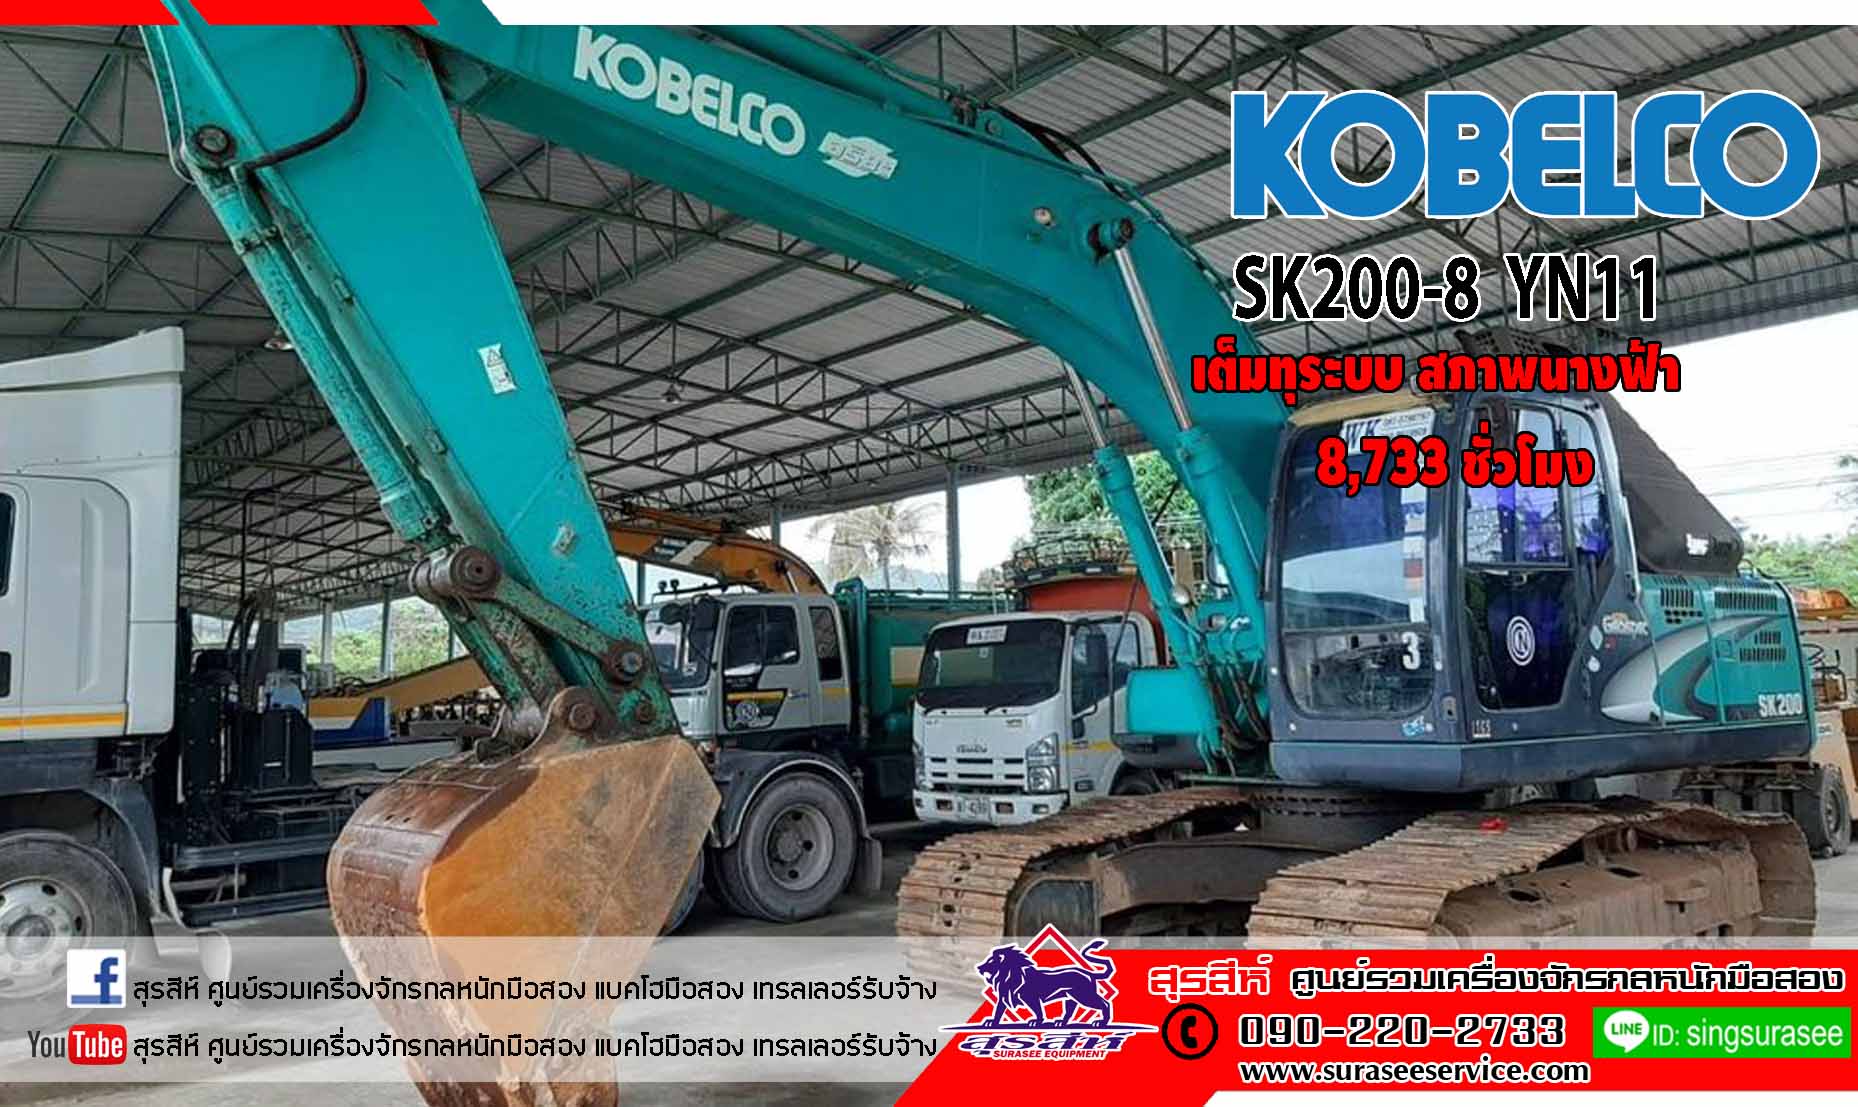 ขายแบคโฮมือสอง KOBELCO SK200-8 YN11 ใช้งานเพียง 8 พันชั่วโมง